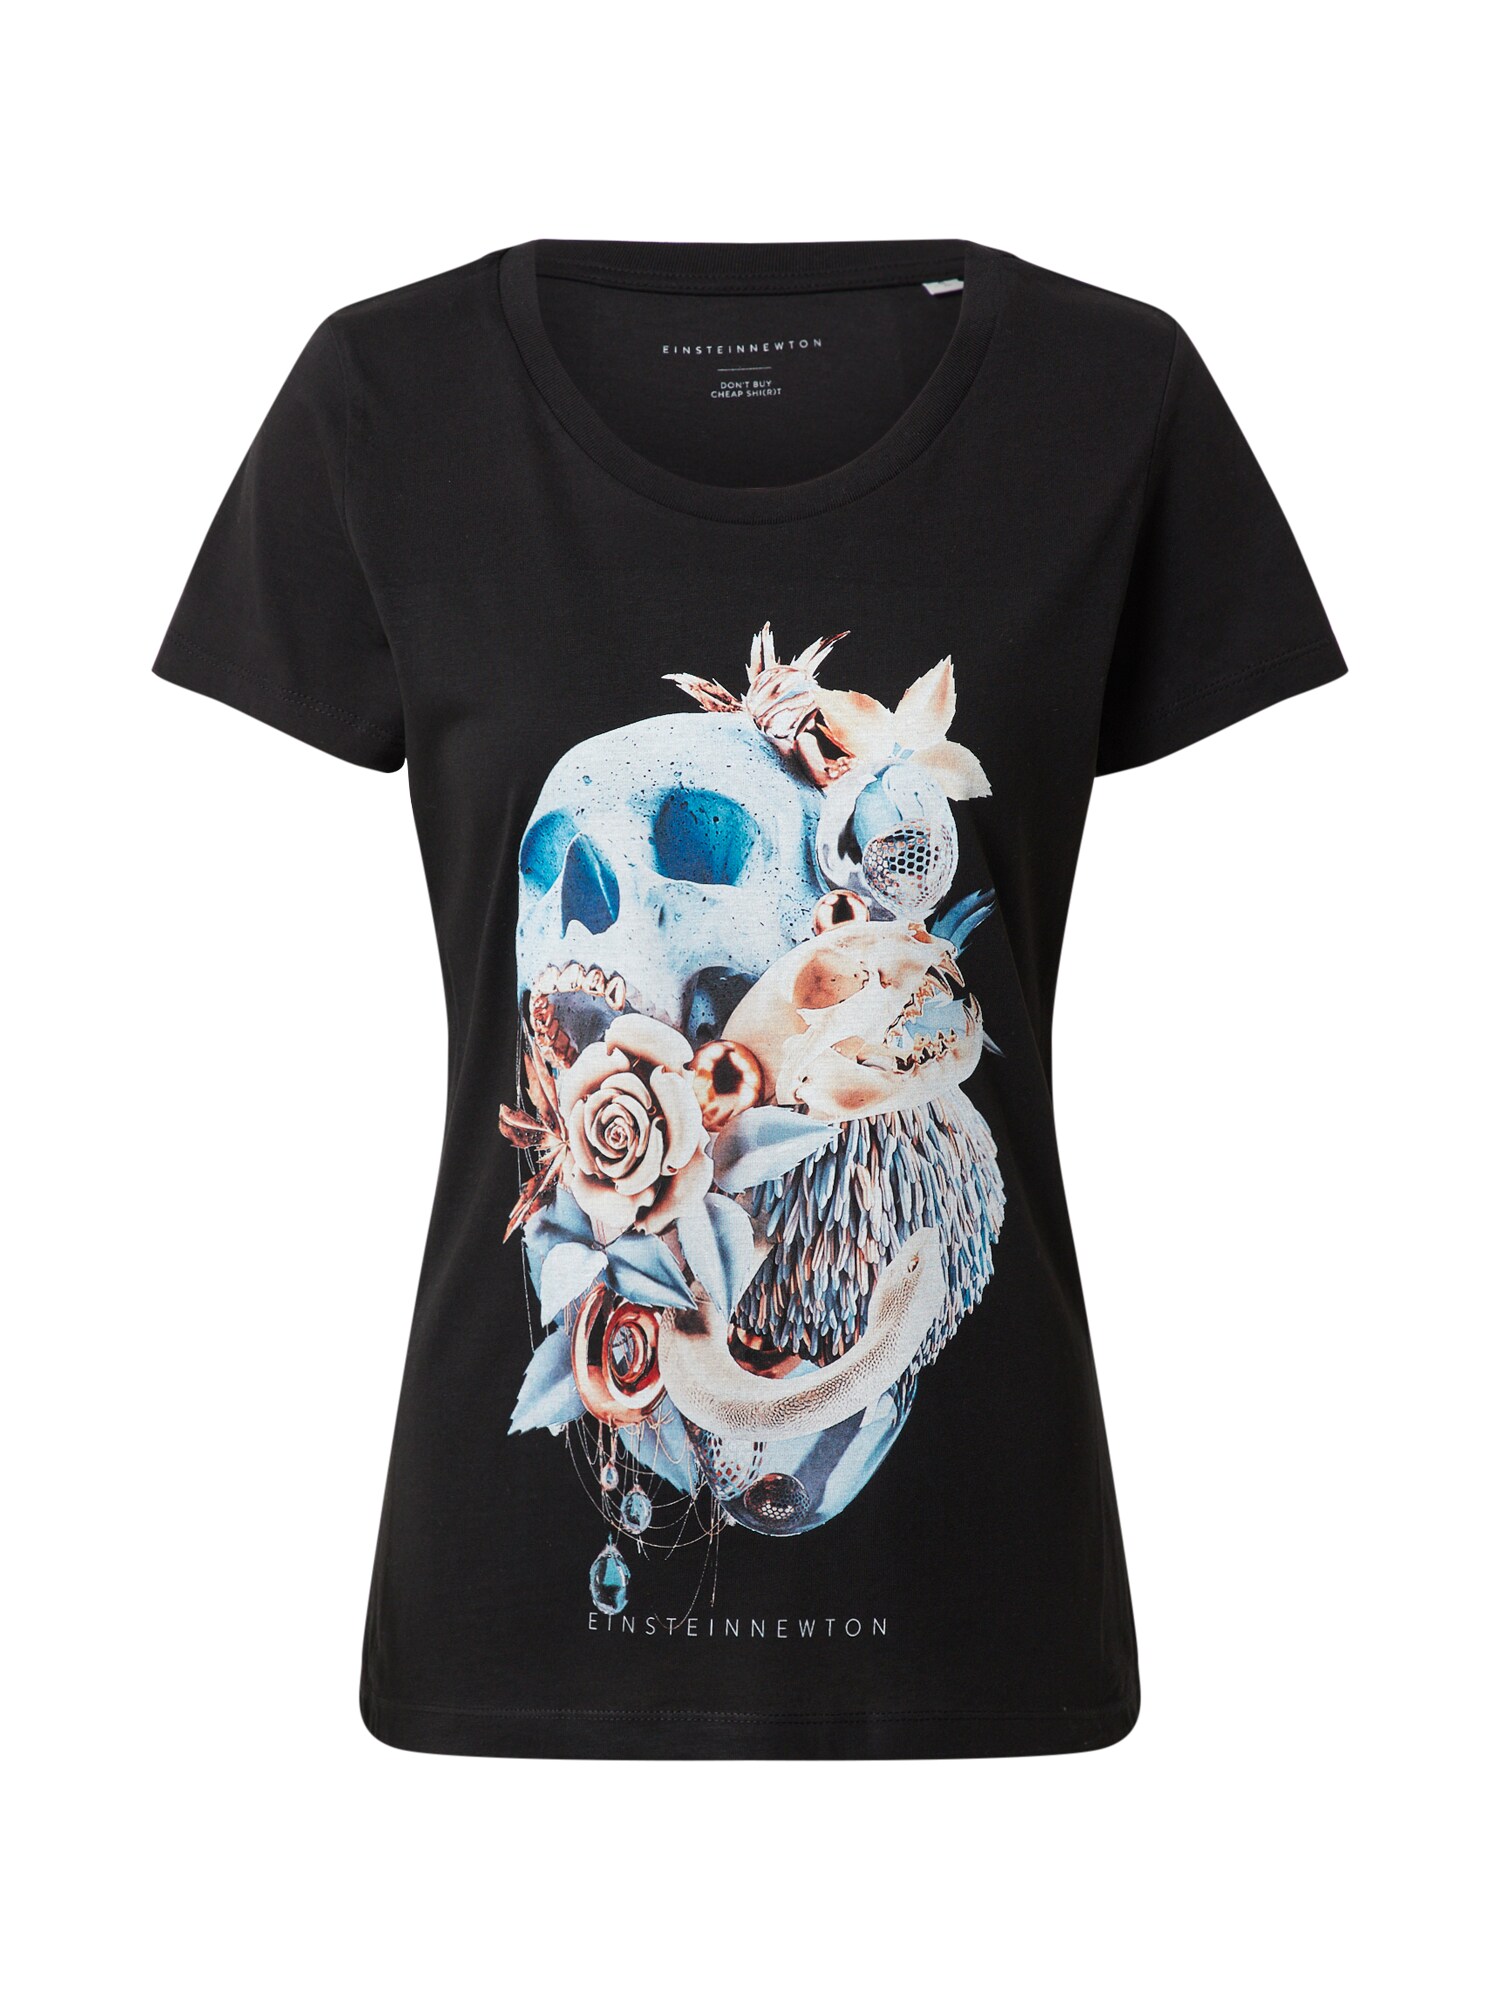 EINSTEIN & NEWTON Marškinėliai 'Sky Skull'  mišrios spalvos / juoda